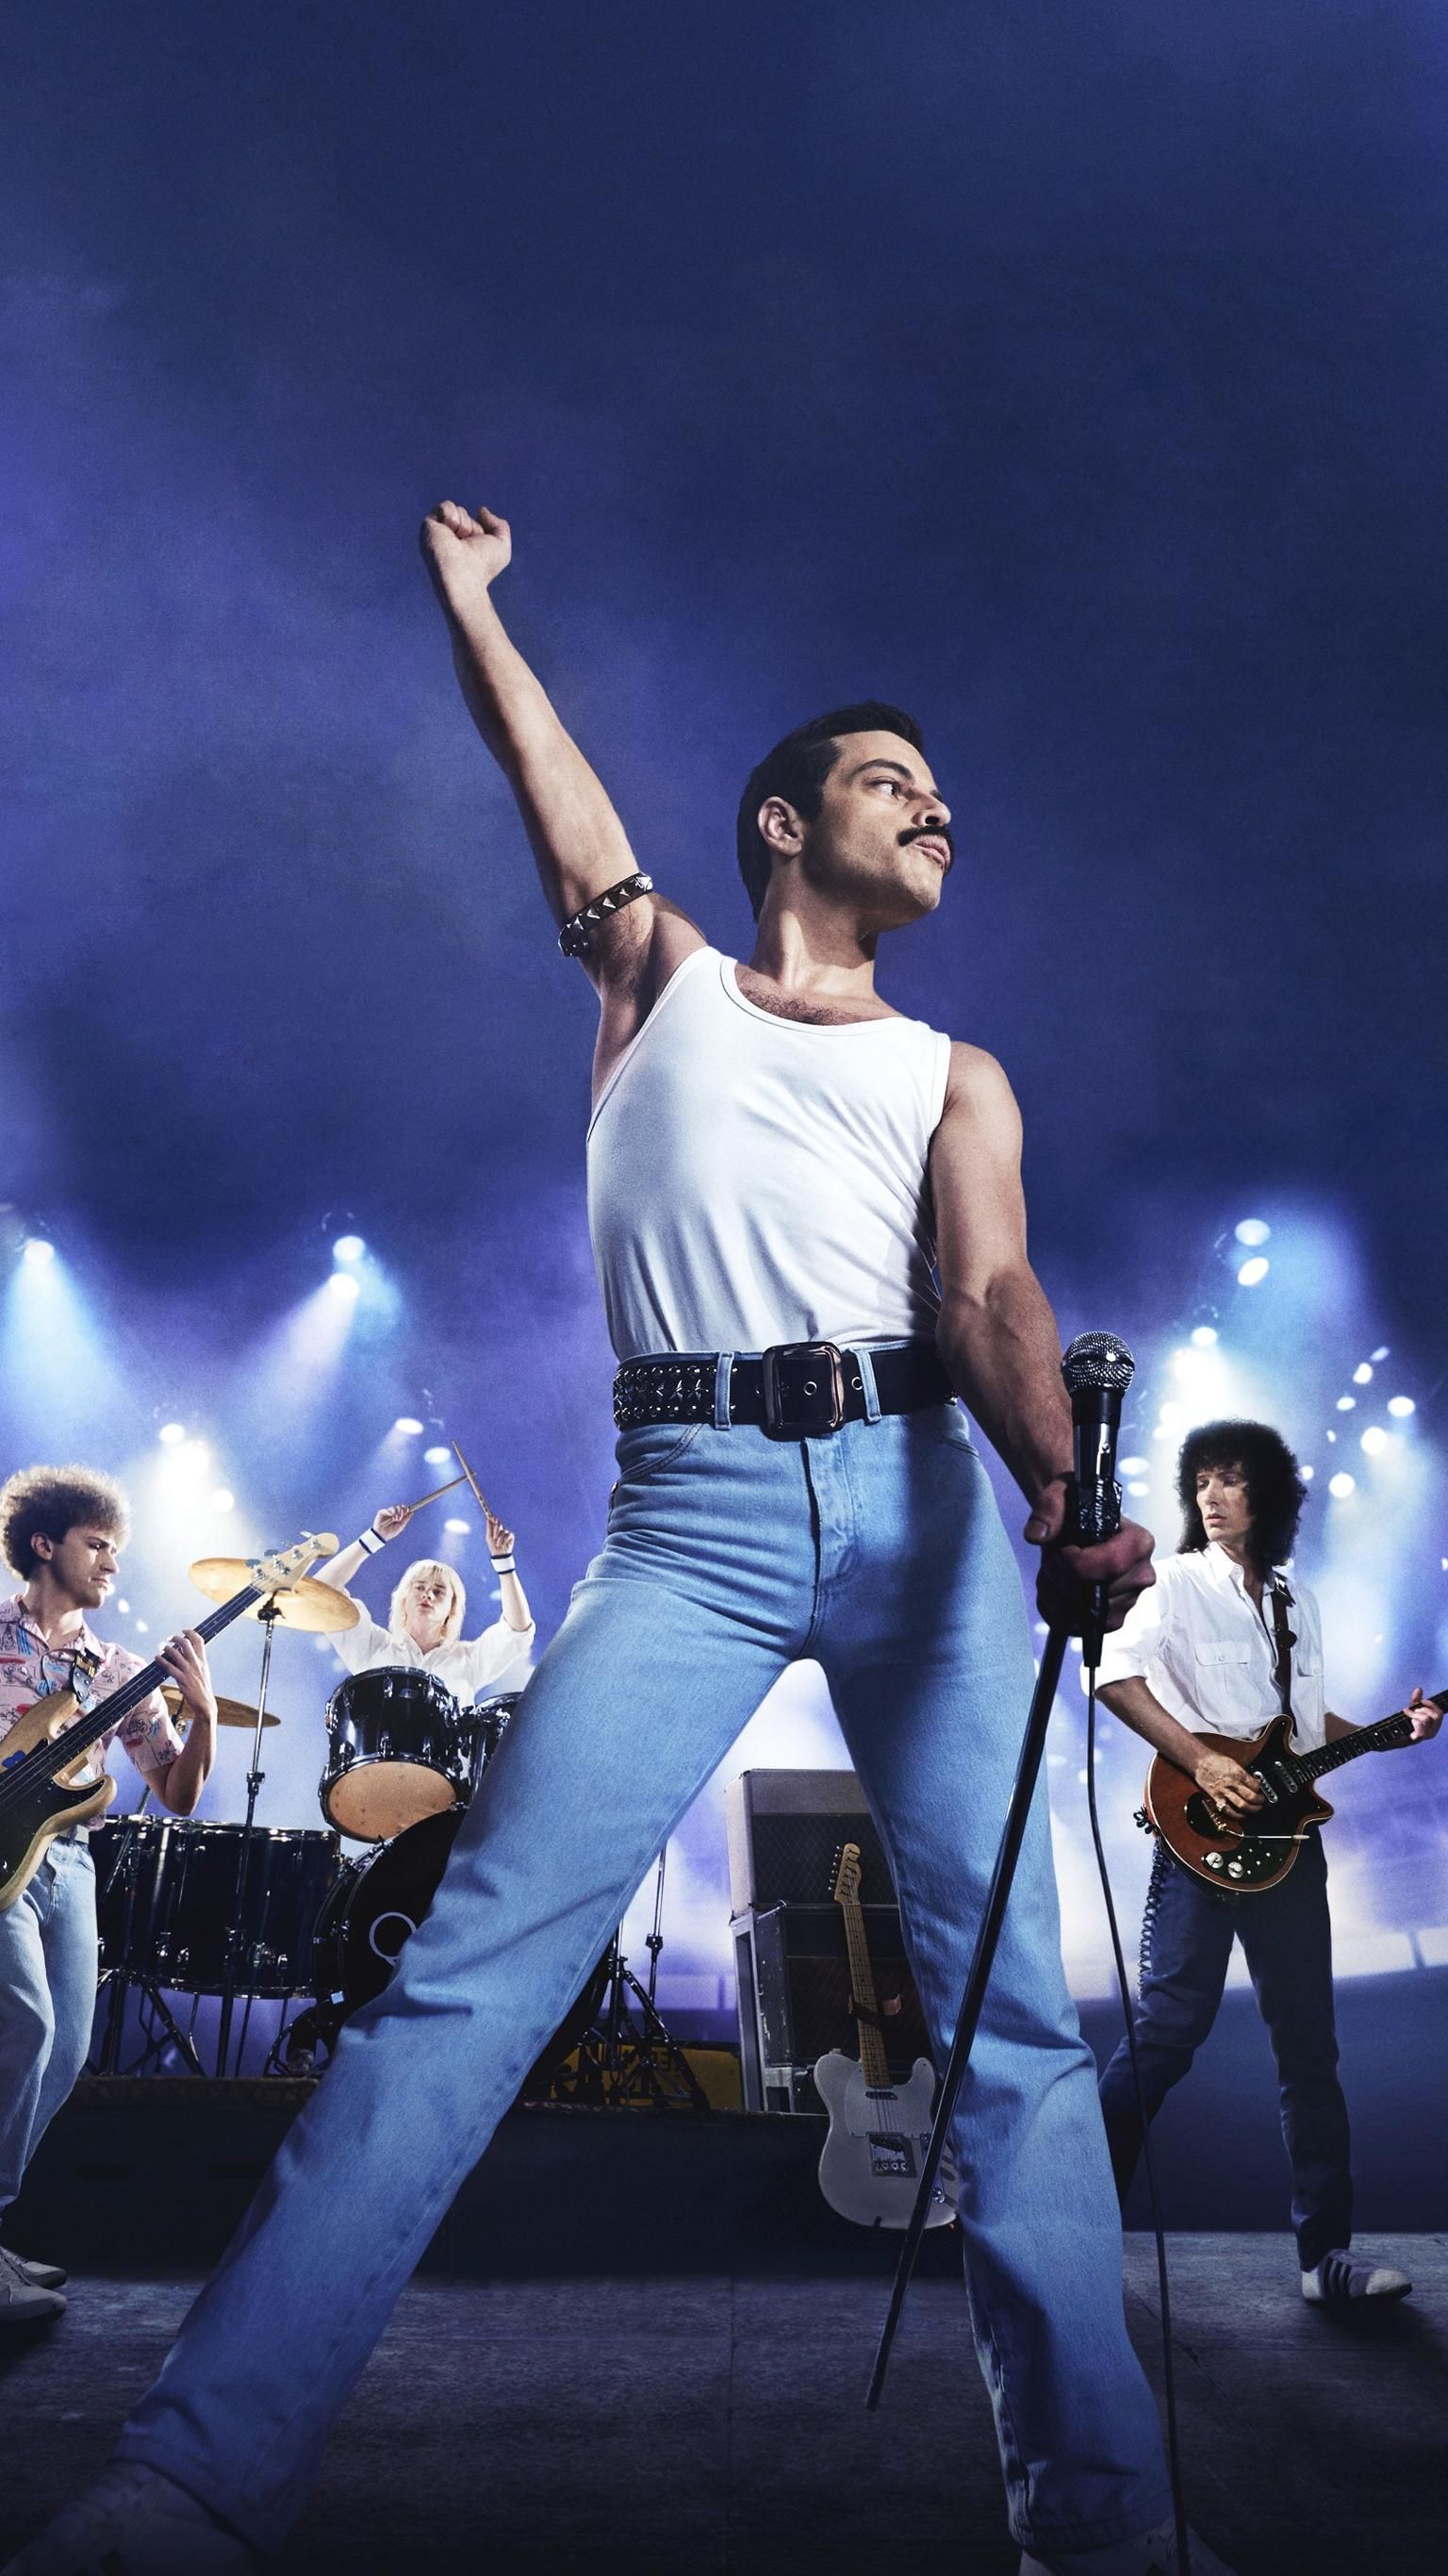 Bohemian Rhapsody (2018) Phone Wallpaper. Queen movie, Queen